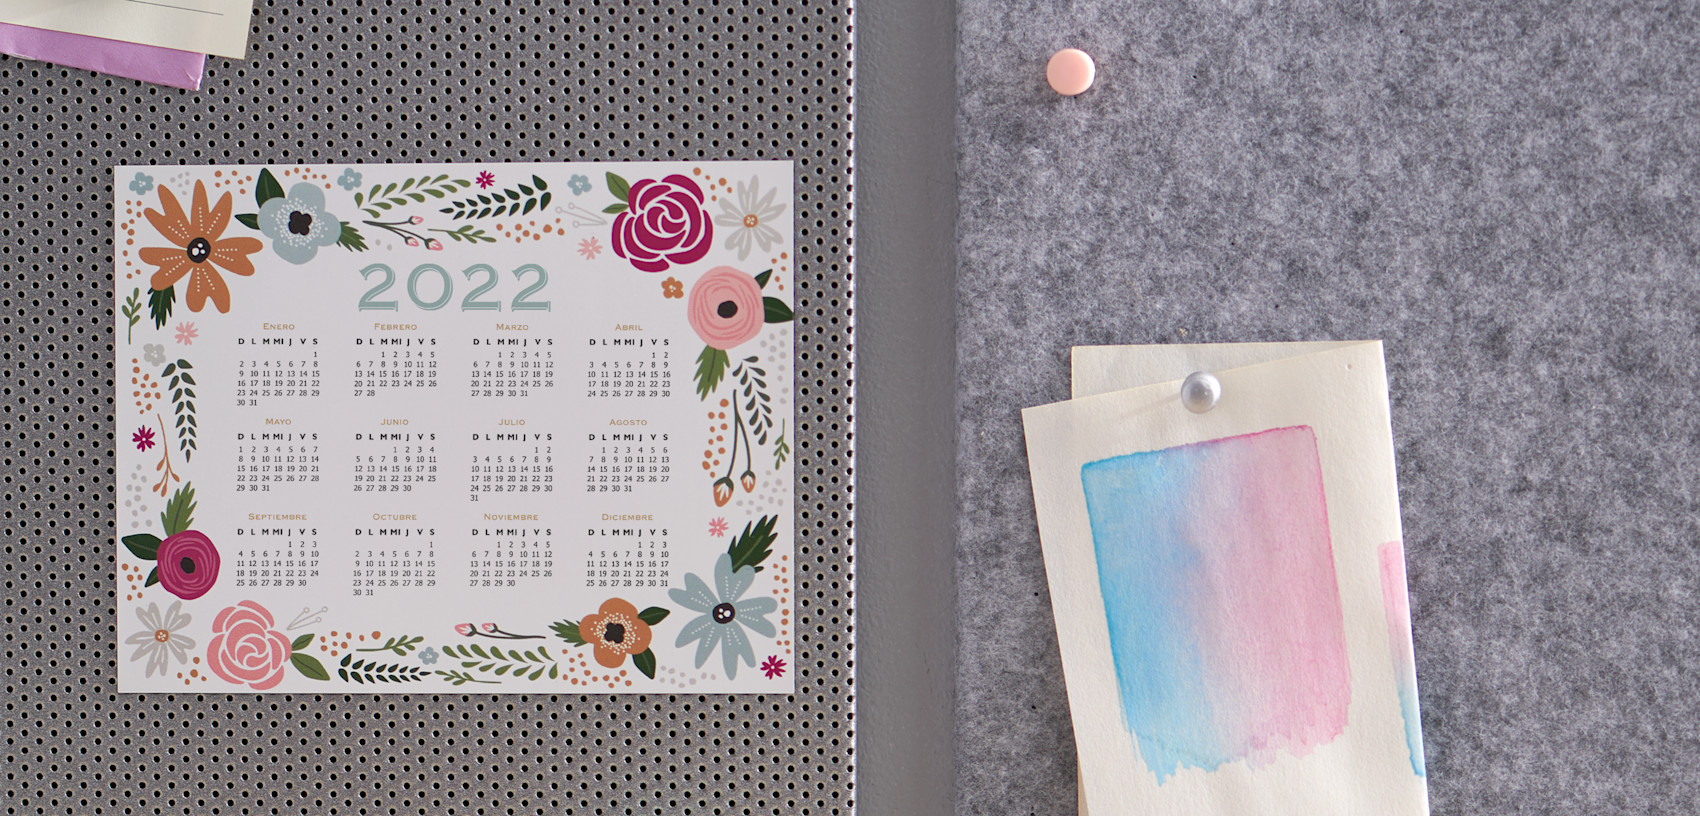 Larger version: calendario floral imantado 